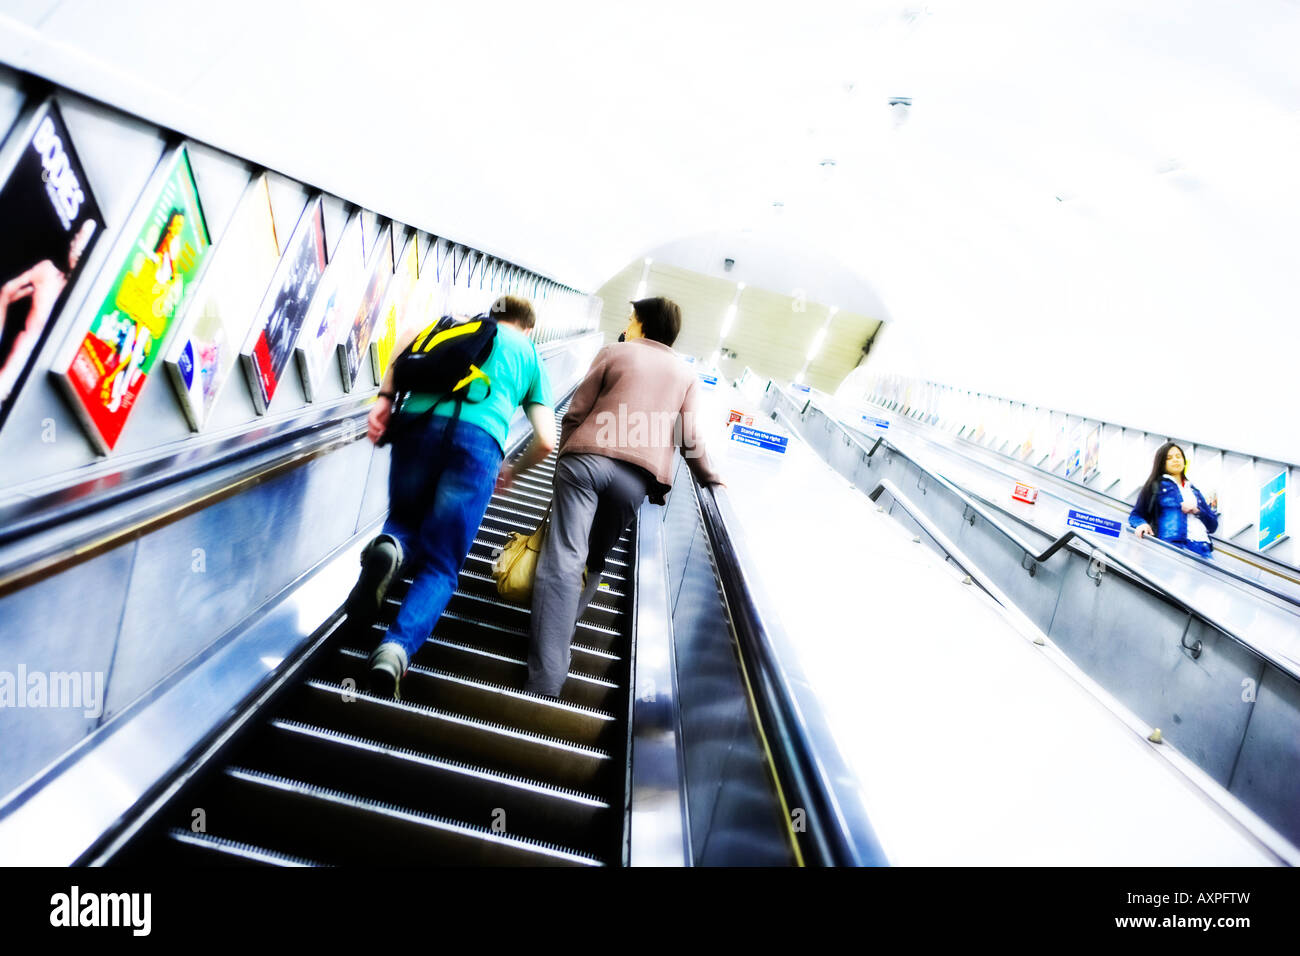 Les navetteurs sur les escaliers mécaniques dans le métro de Londres Banque D'Images